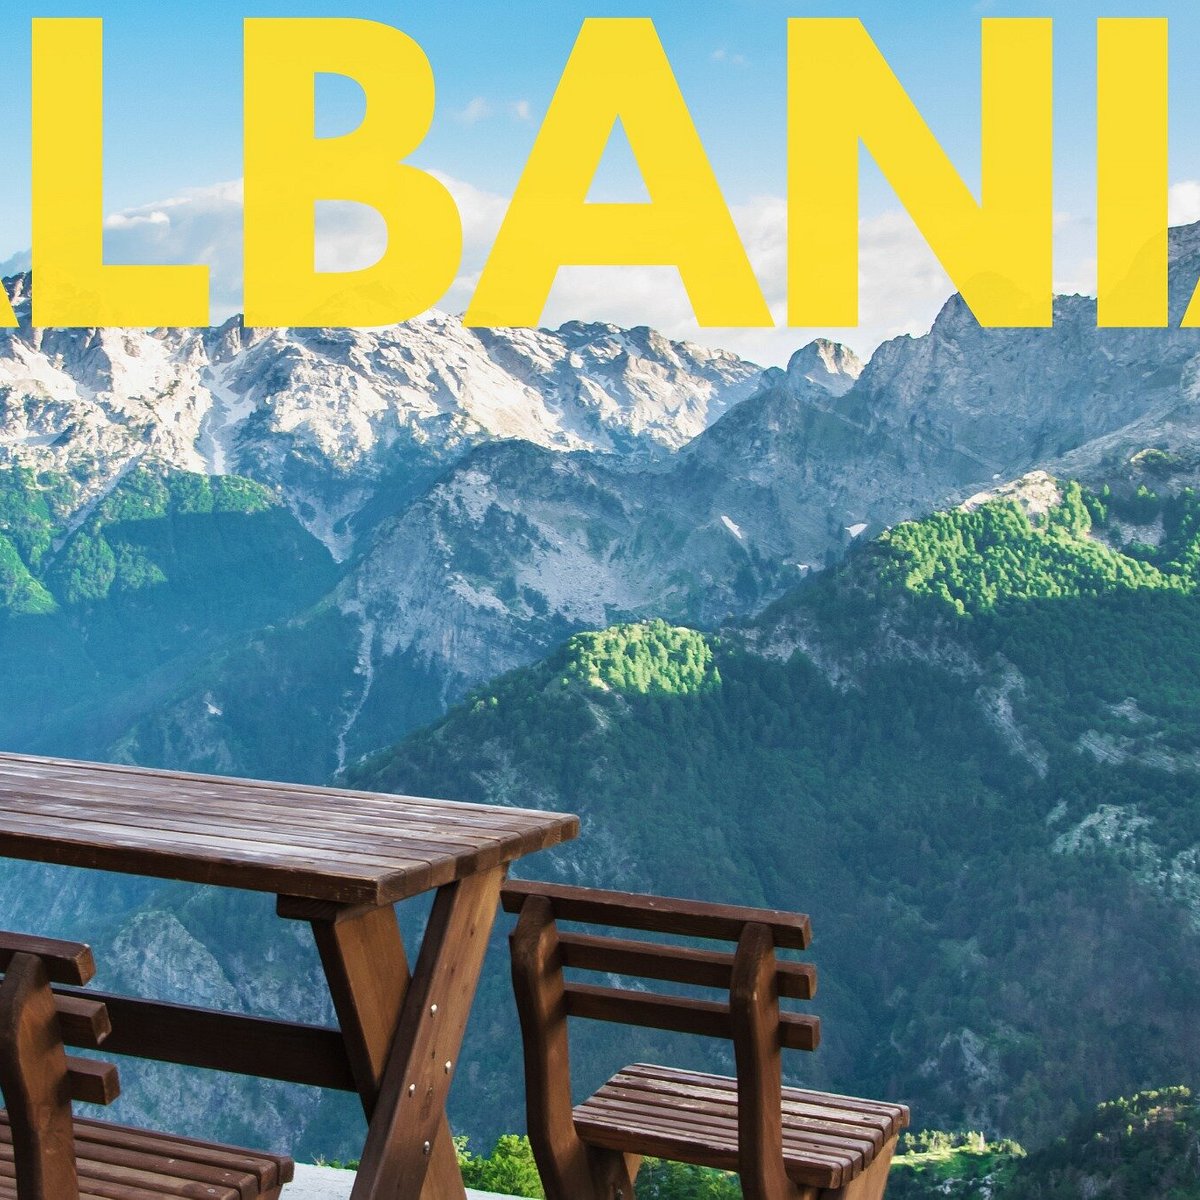 albania travel agency tirana